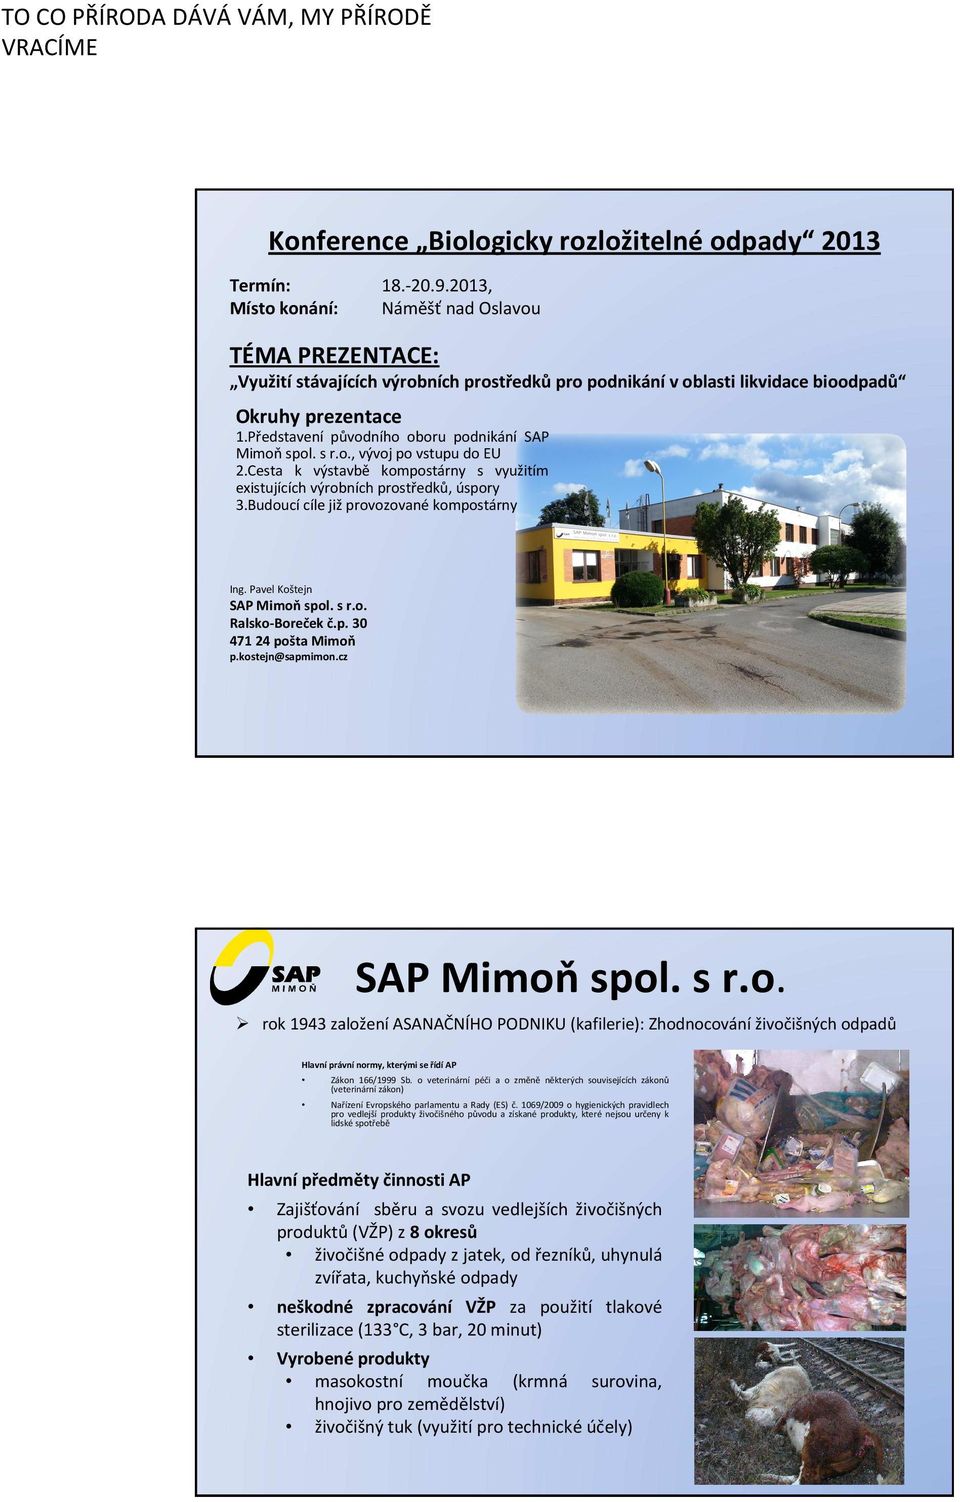 Představení původního oboru podnikání SAP Mimoňspol. s r.o., vývoj po vstupu do EU 2.Cesta k výstavbě kompostárny s využitím existujících výrobních prostředků, úspory 3.